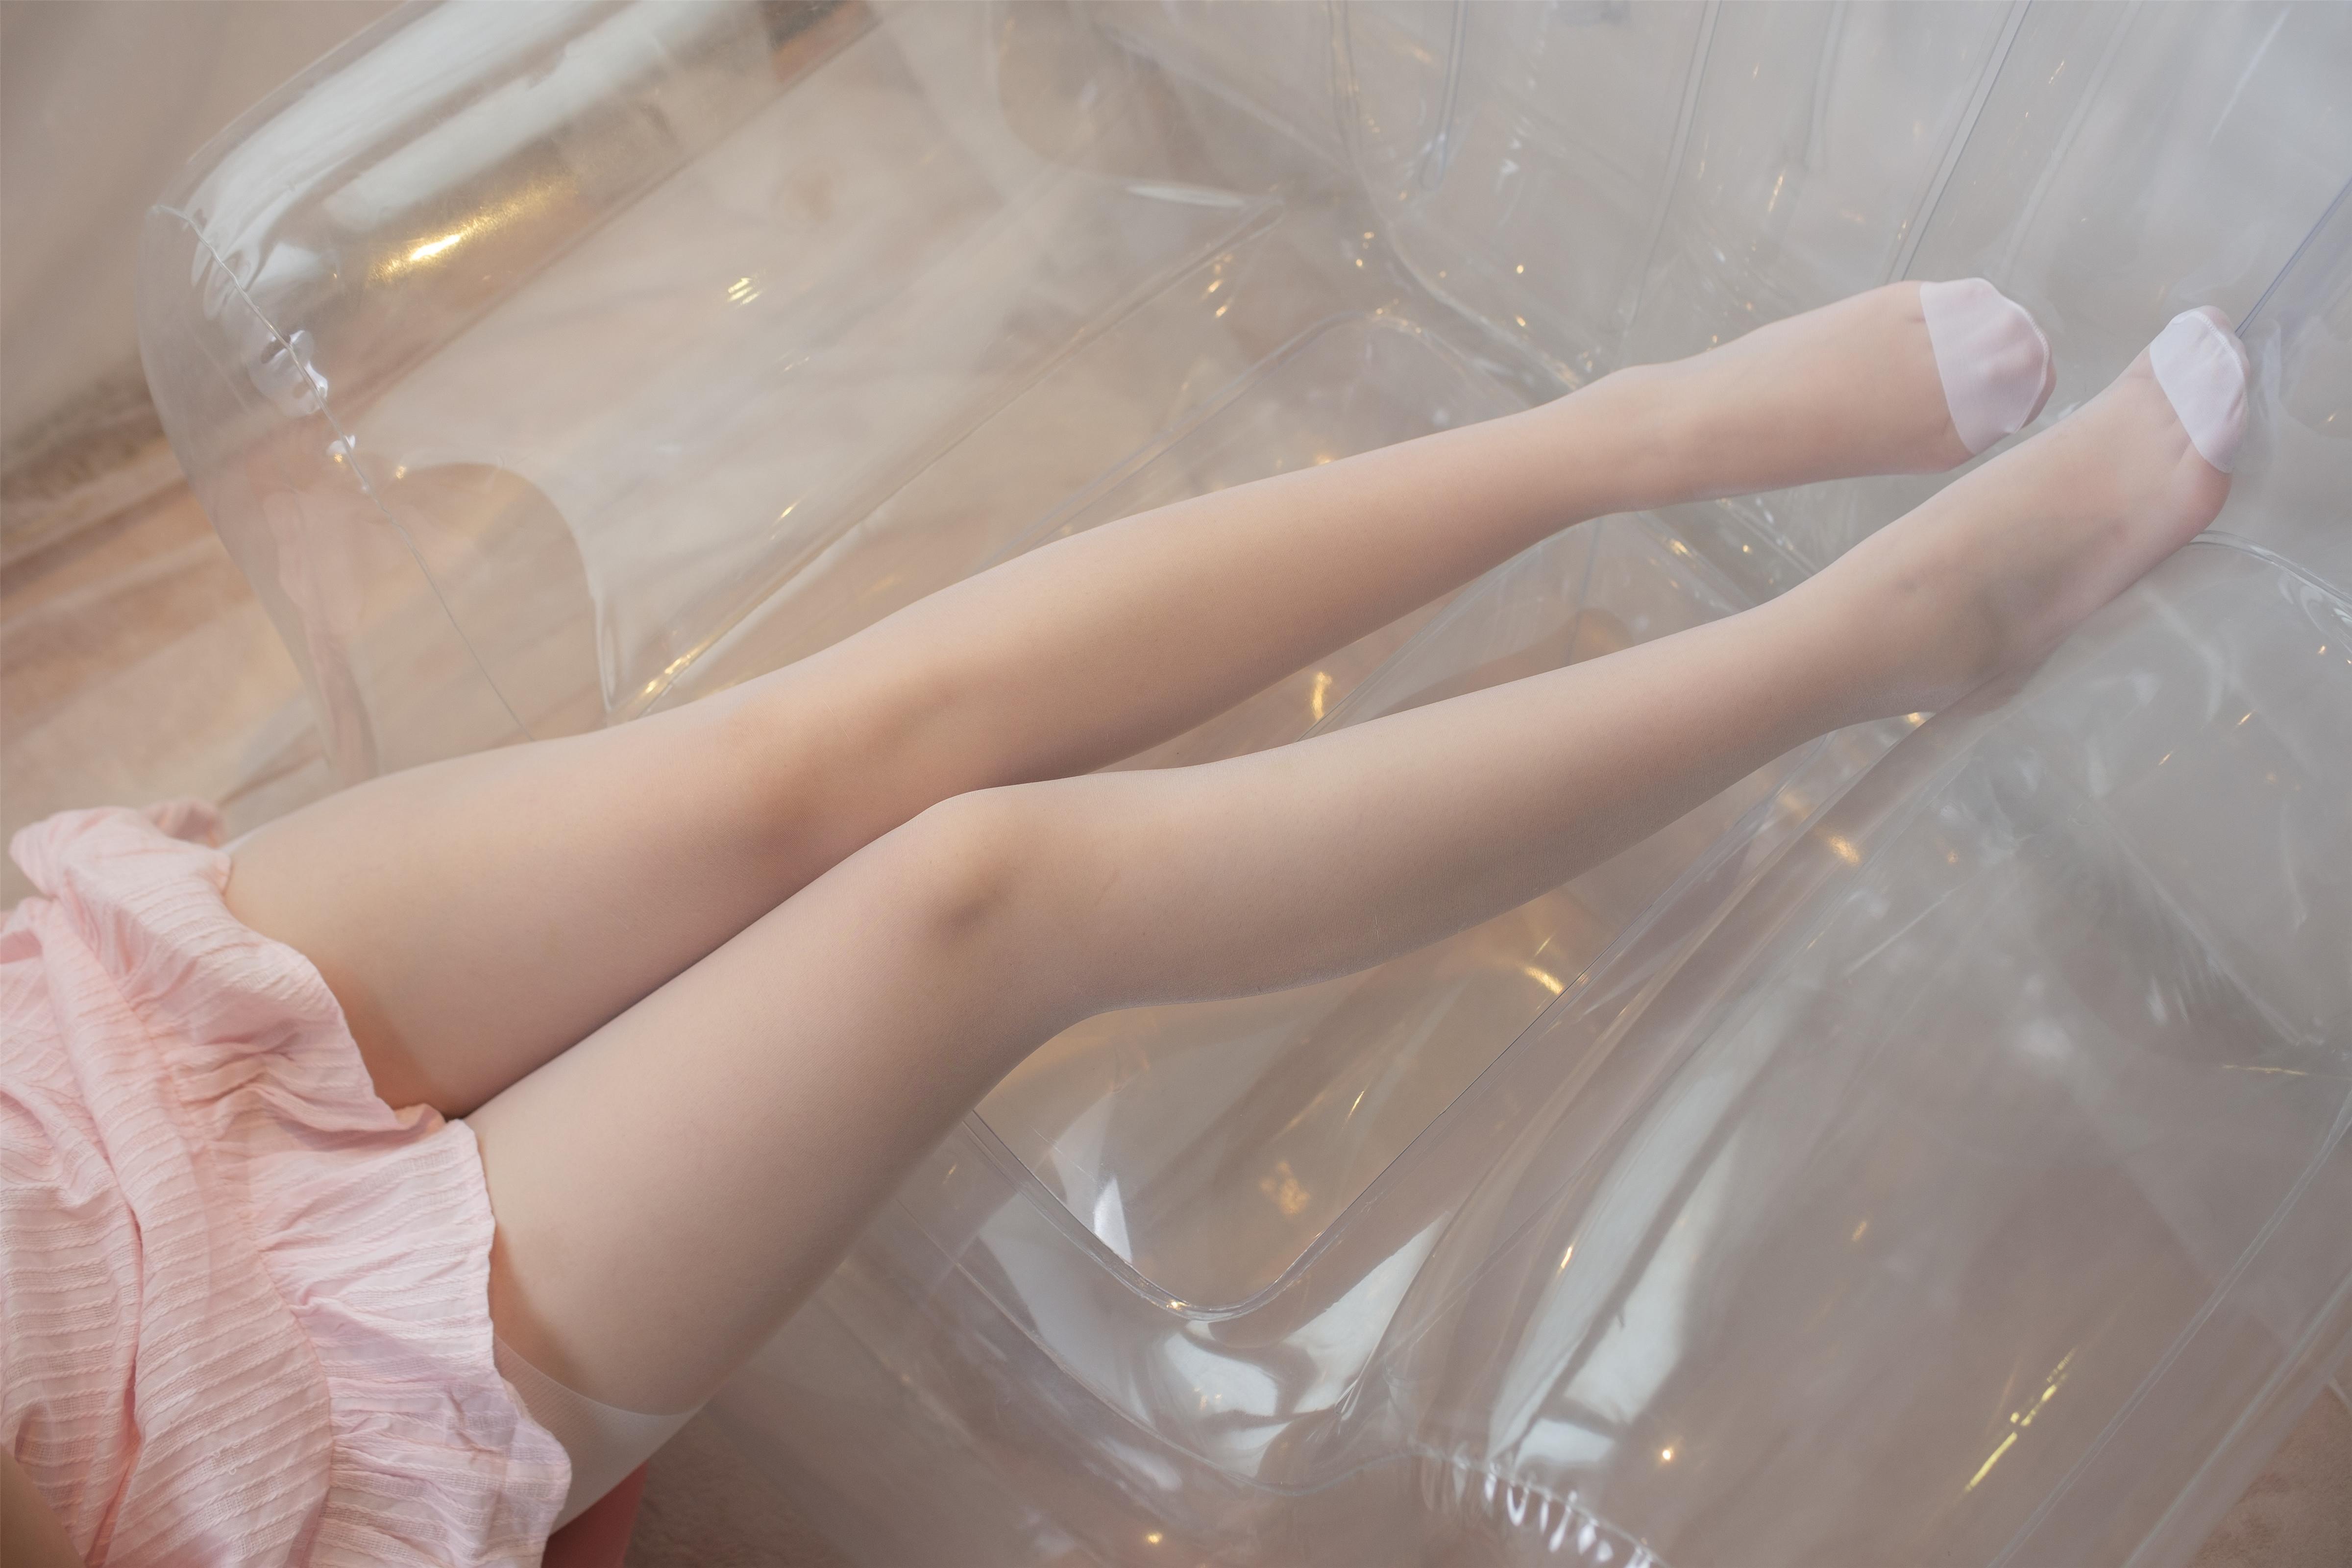 [森萝财团]X-036 性感小萝莉 粉色吊带连衣裙加白色丝袜美腿玉足私房写真集,